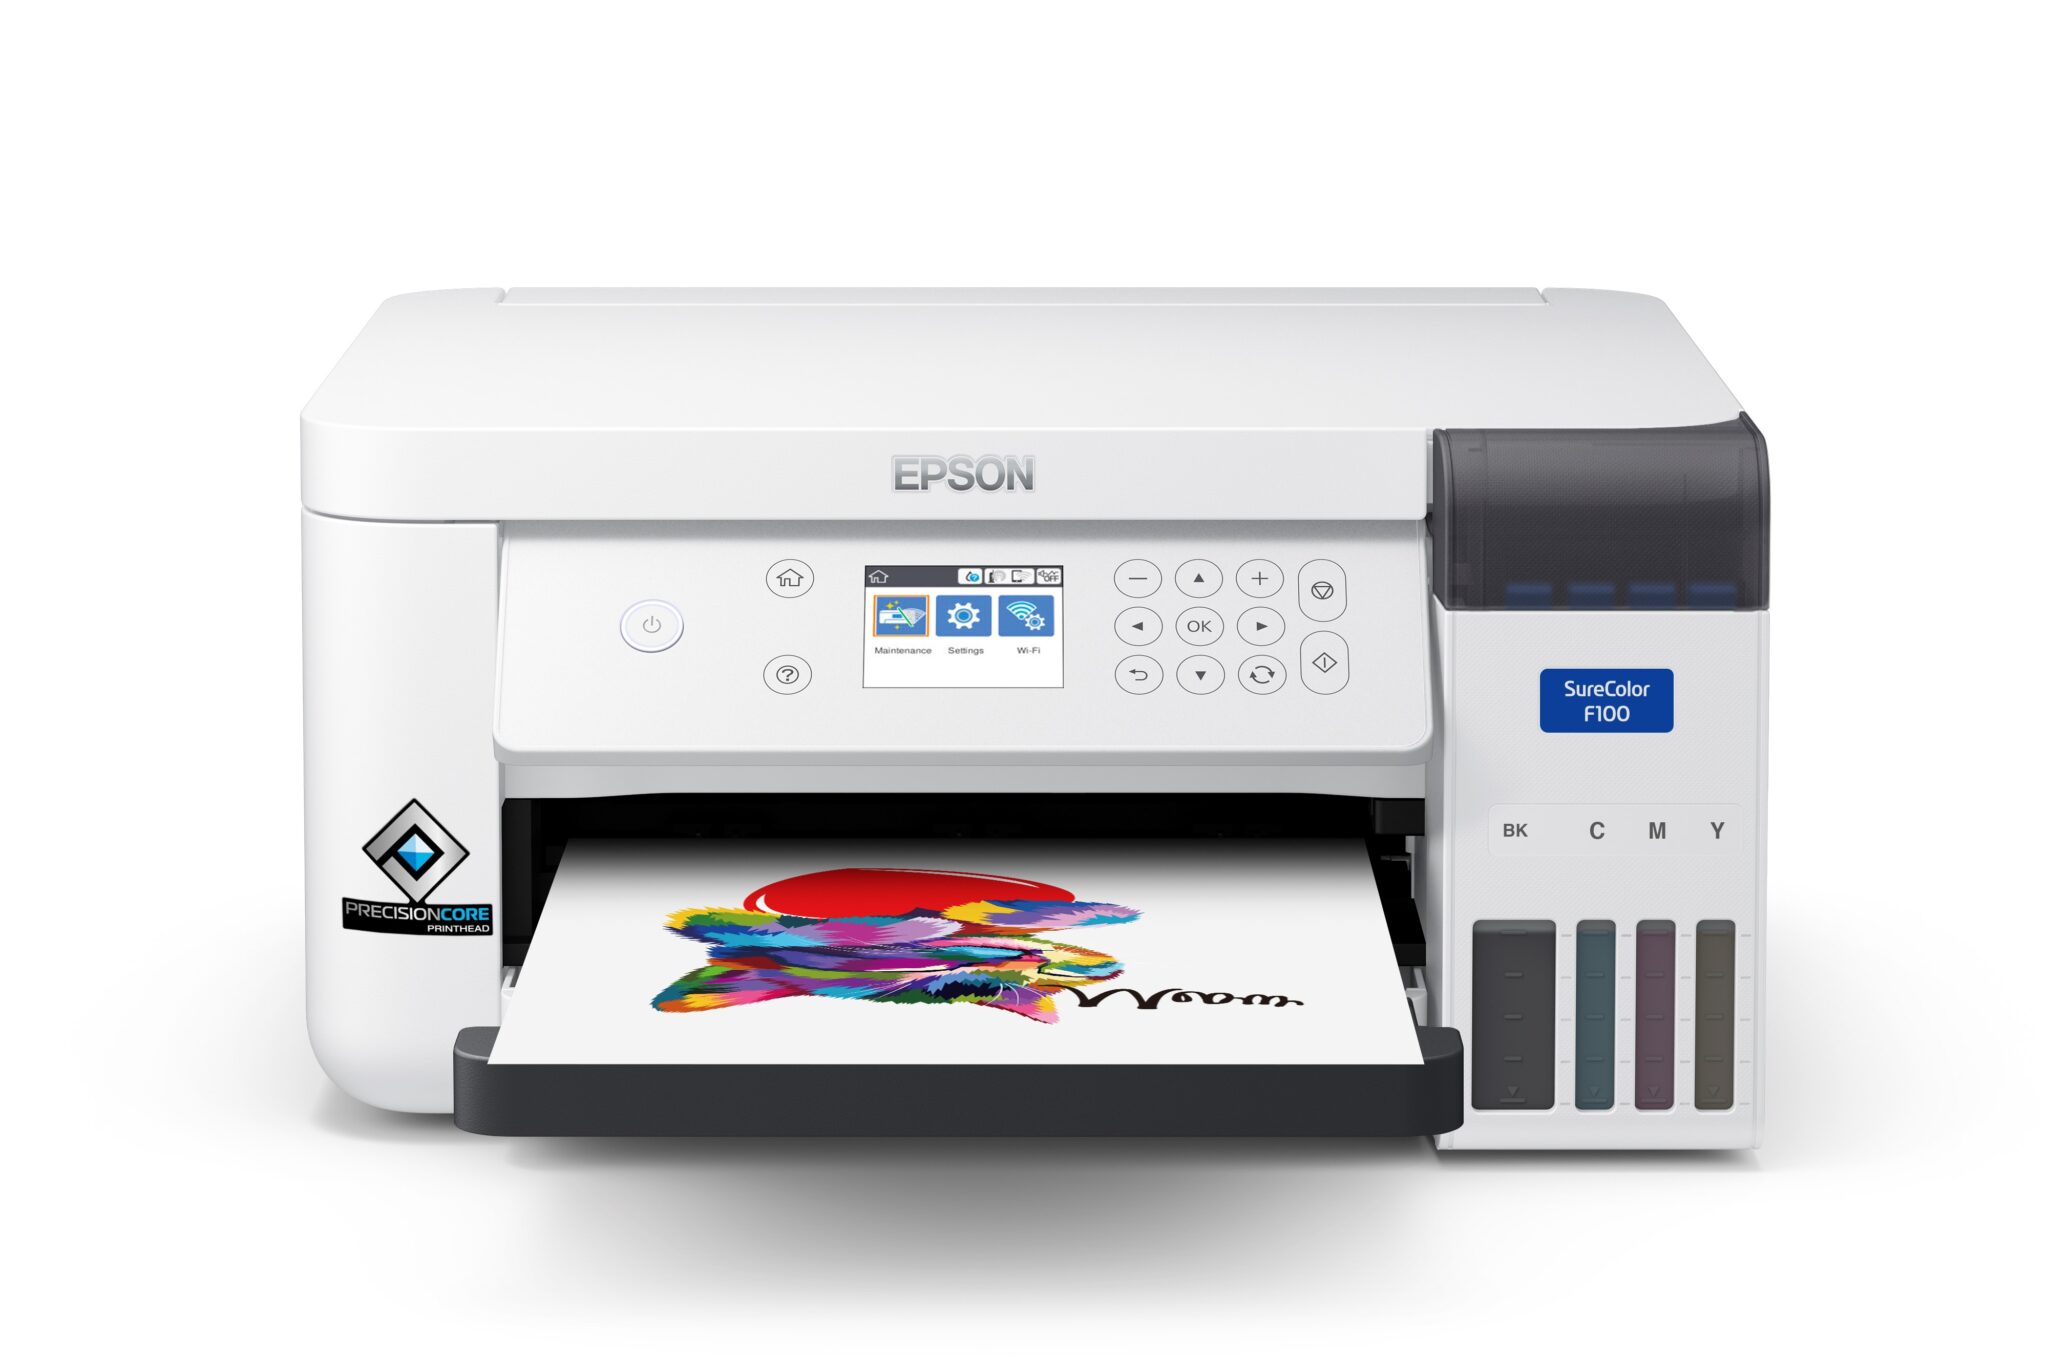 Nuova stampante a sublimazione Epson, pensata per le piccole imprese